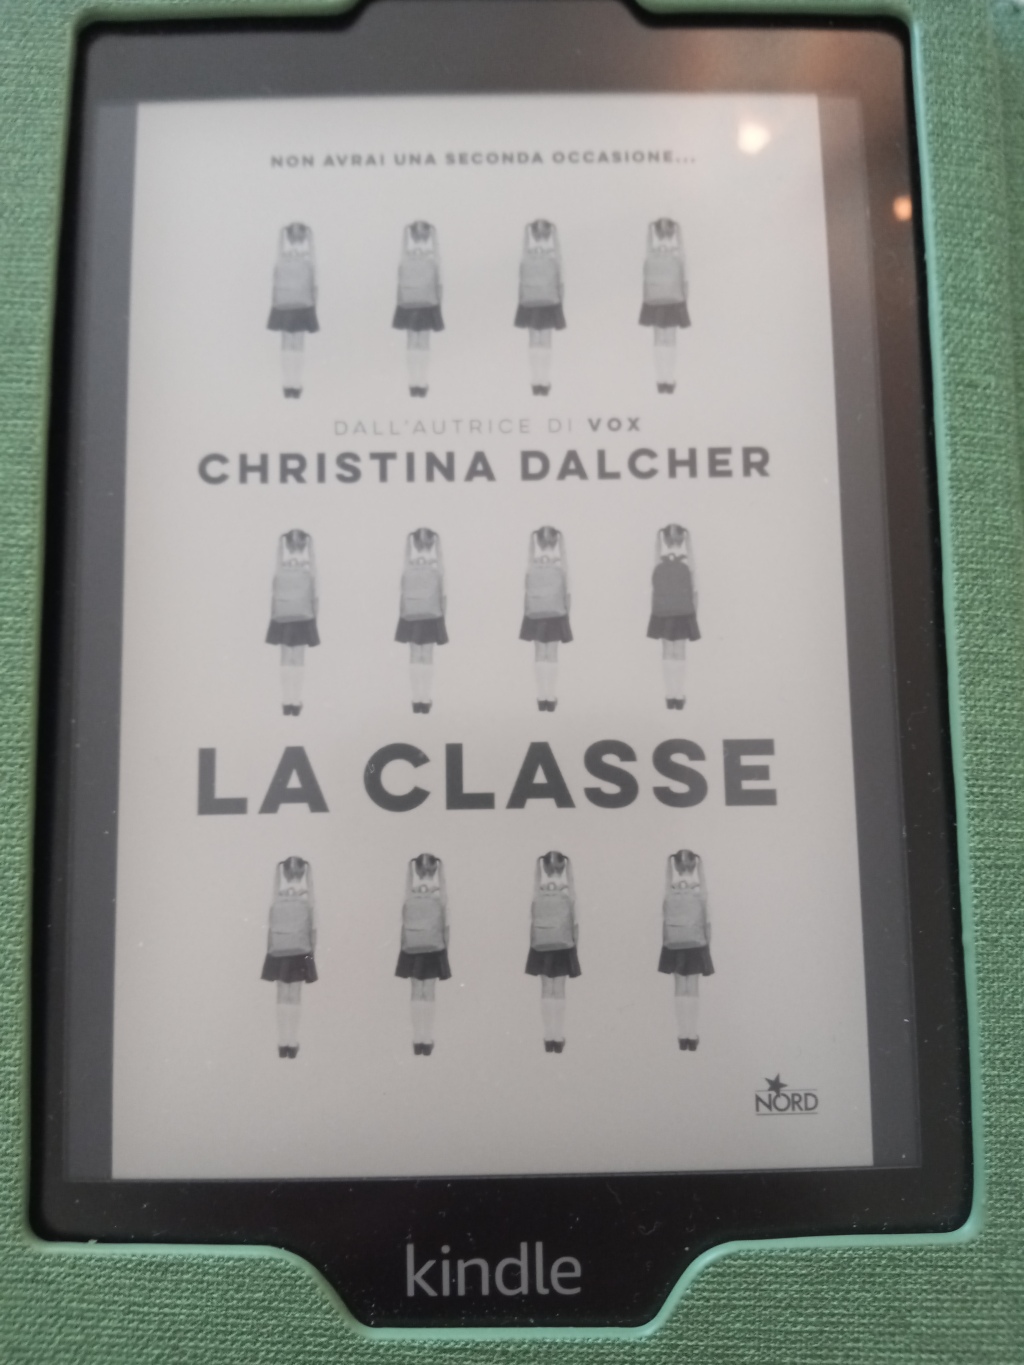 Orecchio 17. “La classe” – C. Dalcher